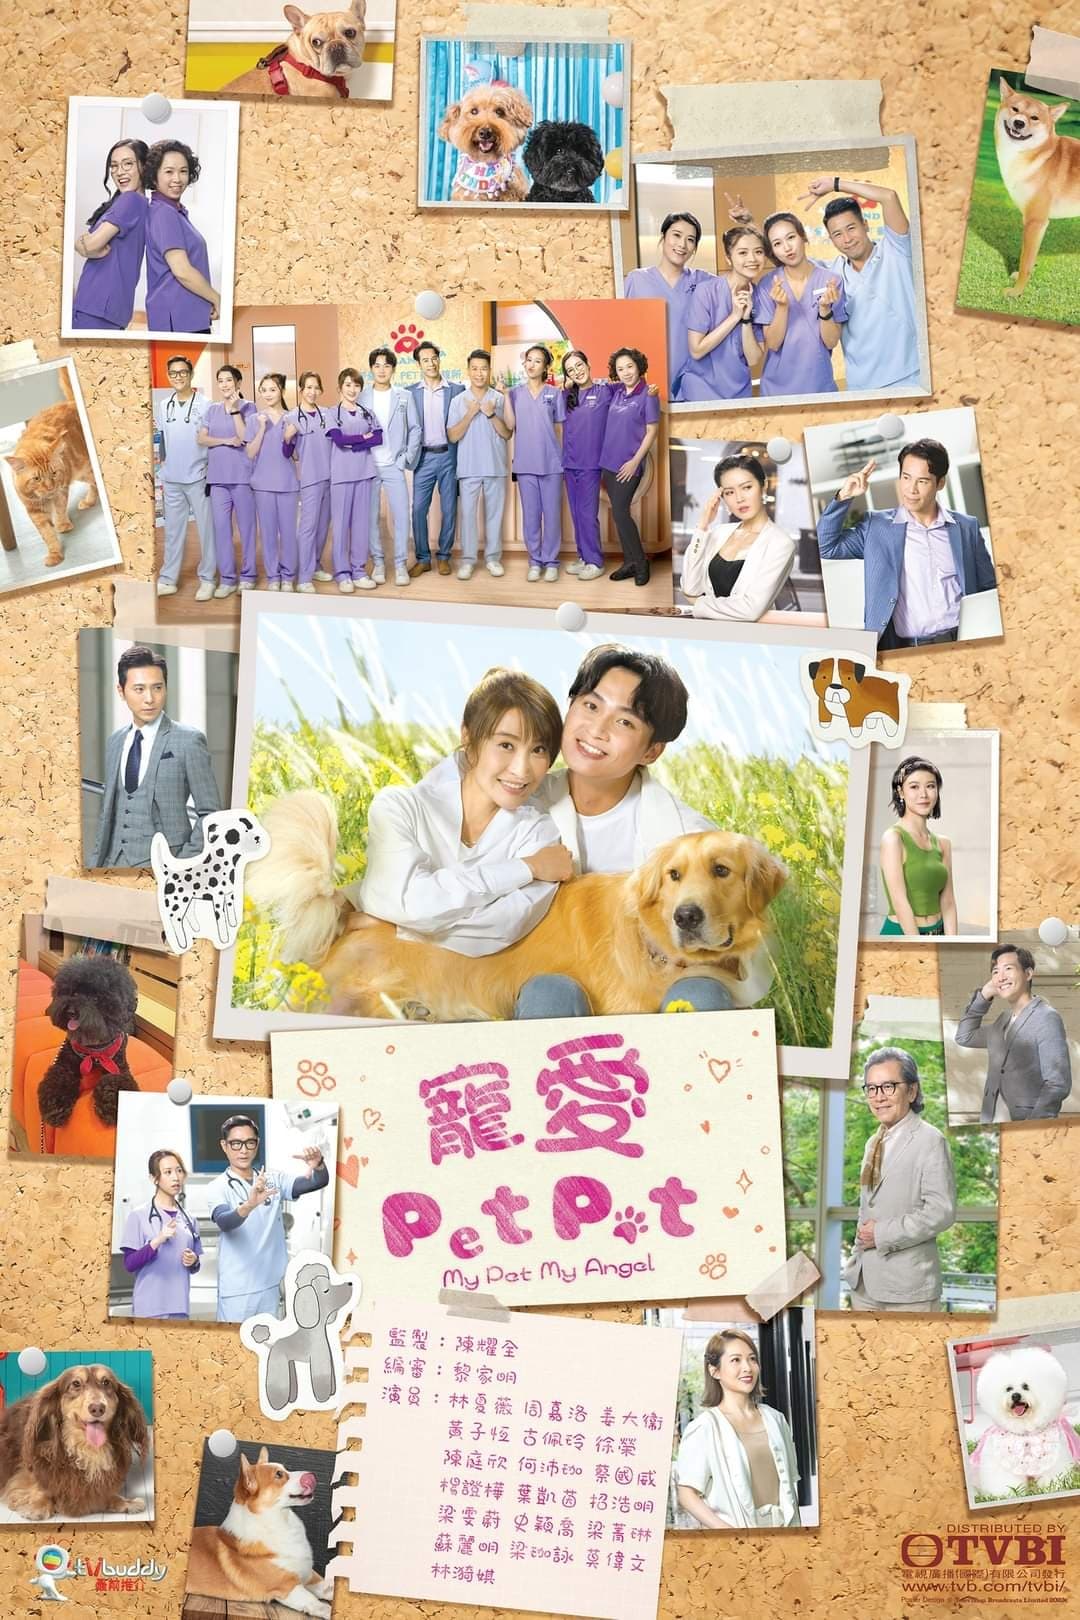 TV ratings for My Pet My Angel (寵愛Pet Pet) in India. TVB Jade TV series